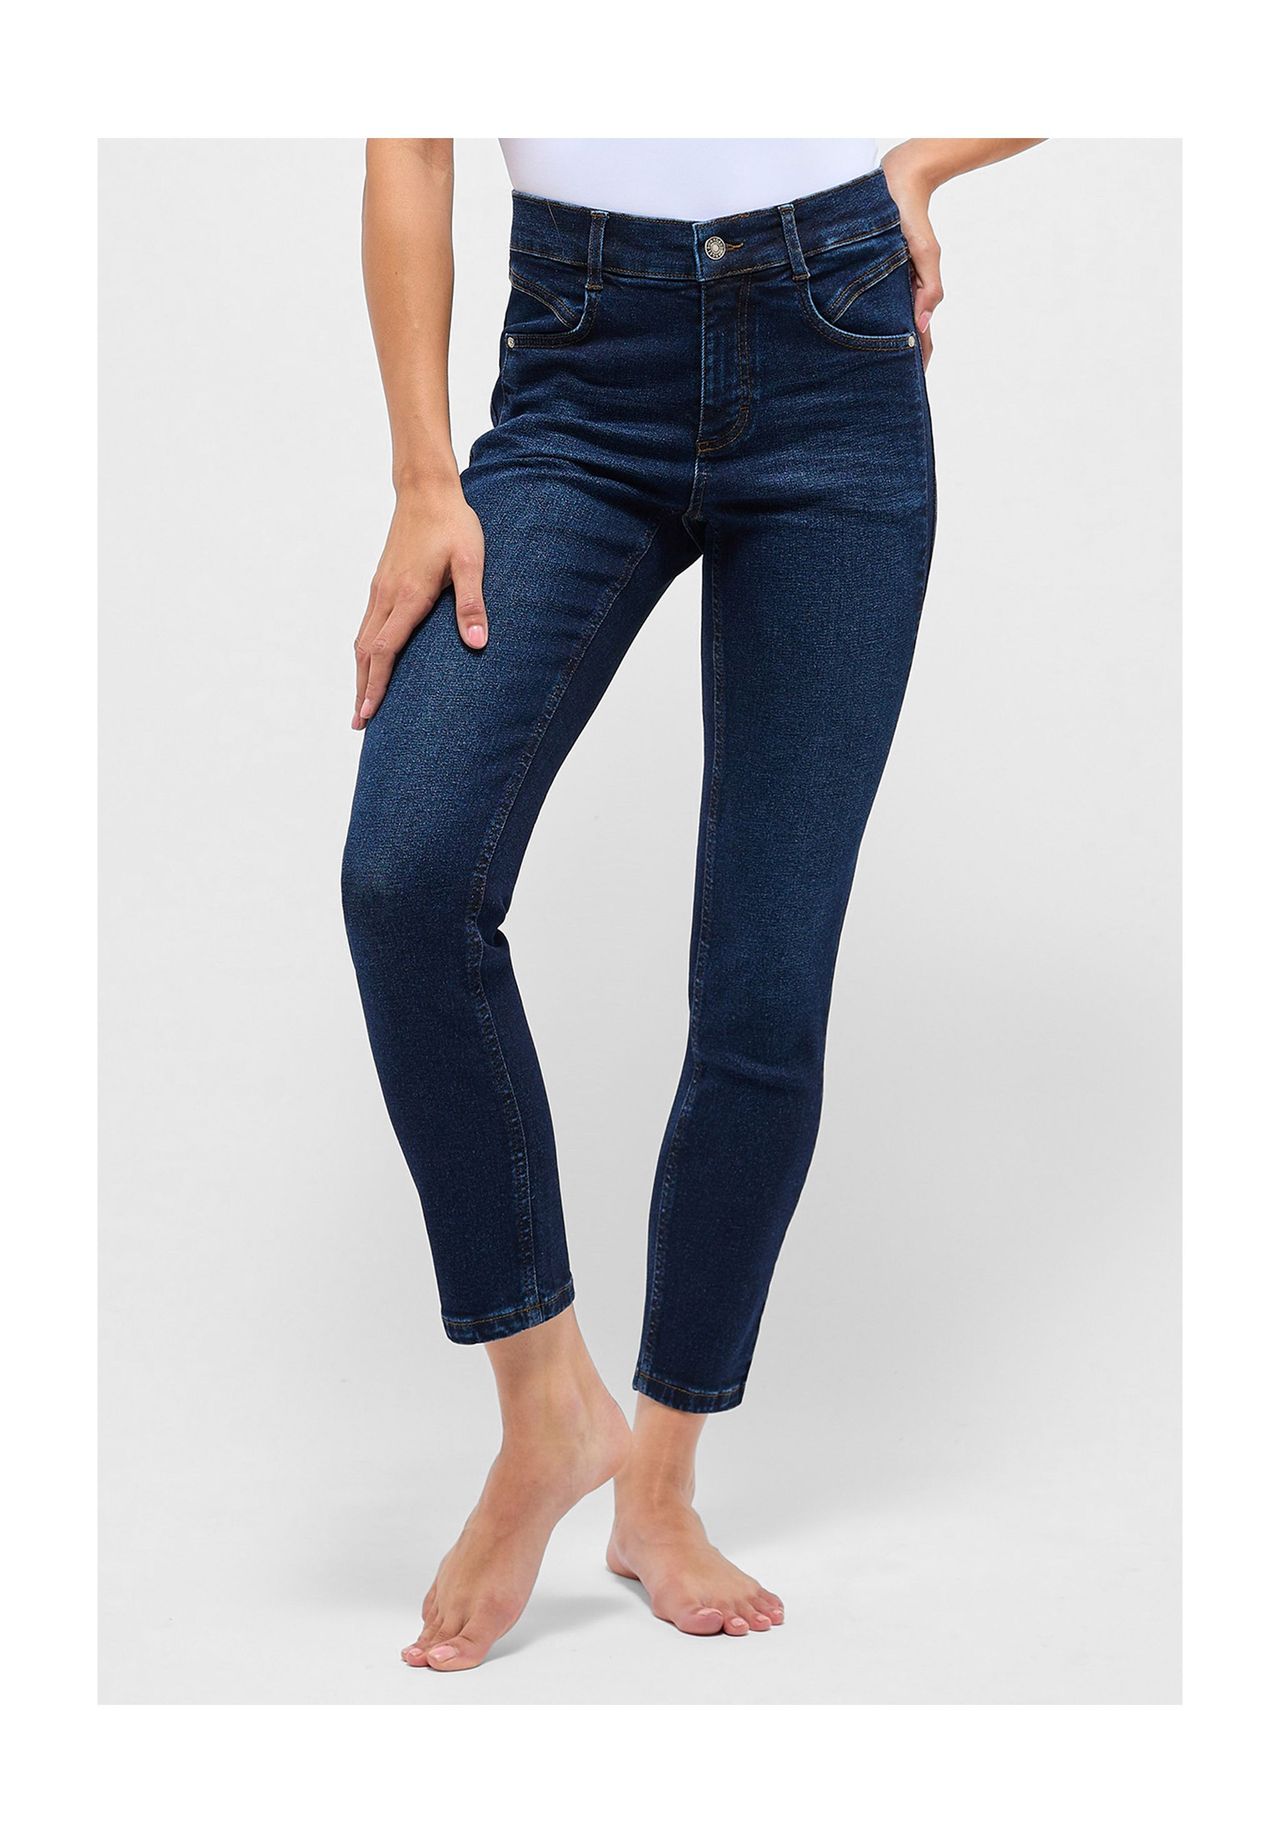 Lila jeans damen kaufen | GALERIA